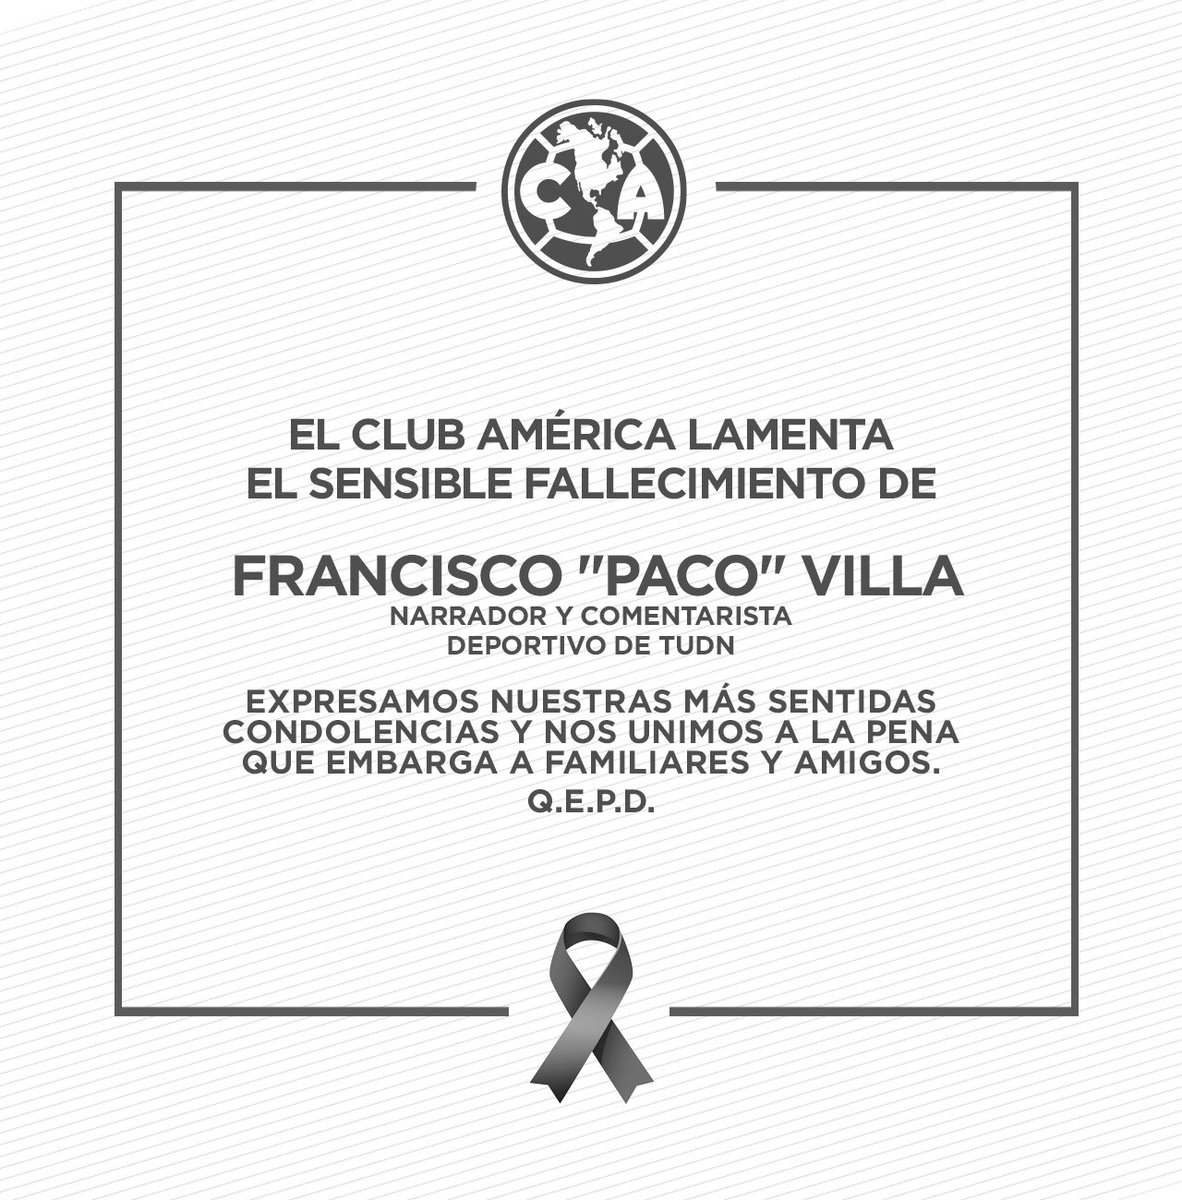 El Club América lamenta el sensible fallecimiento de Francisco “Paco” Villa, narrador y comentarista deportivo de TUDN. Expresamos nuestras más sentidas condolencias y nos unimos a la pena que embarga a familiares y amigos. Q. E. P. D.